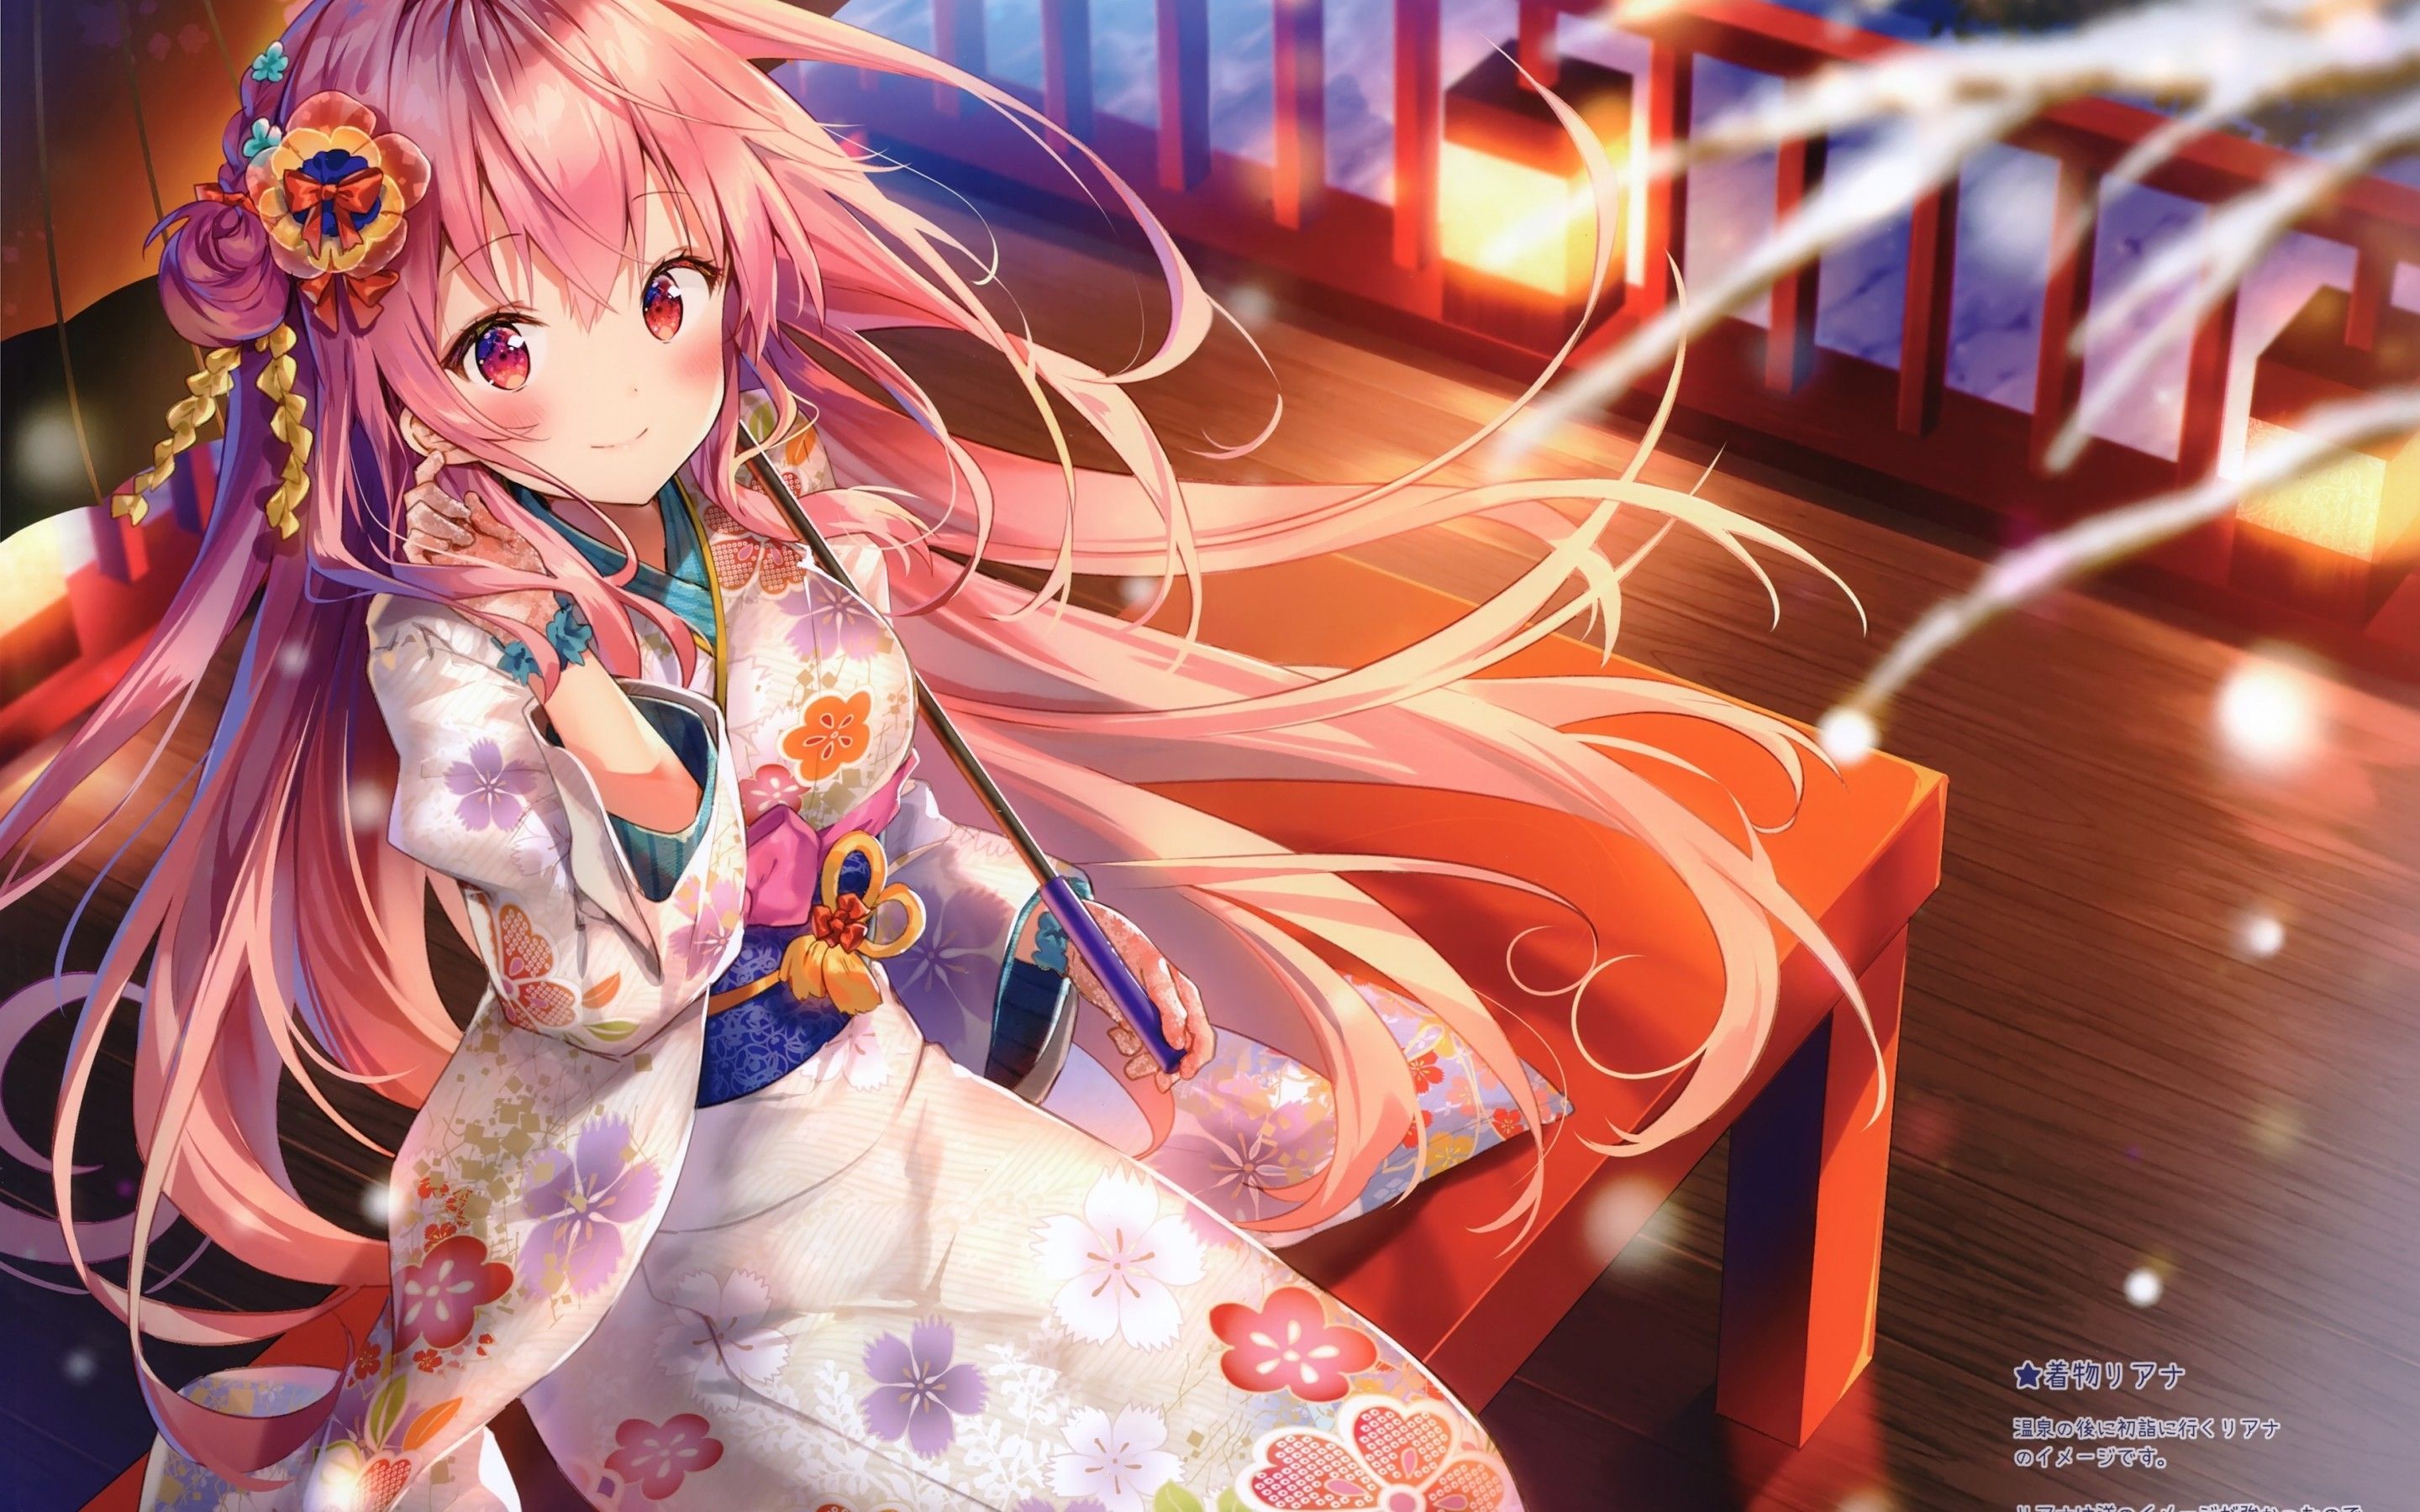 Download 2880x1800 Anime Girl, Pink Hair, Kimono, Lantern, Night